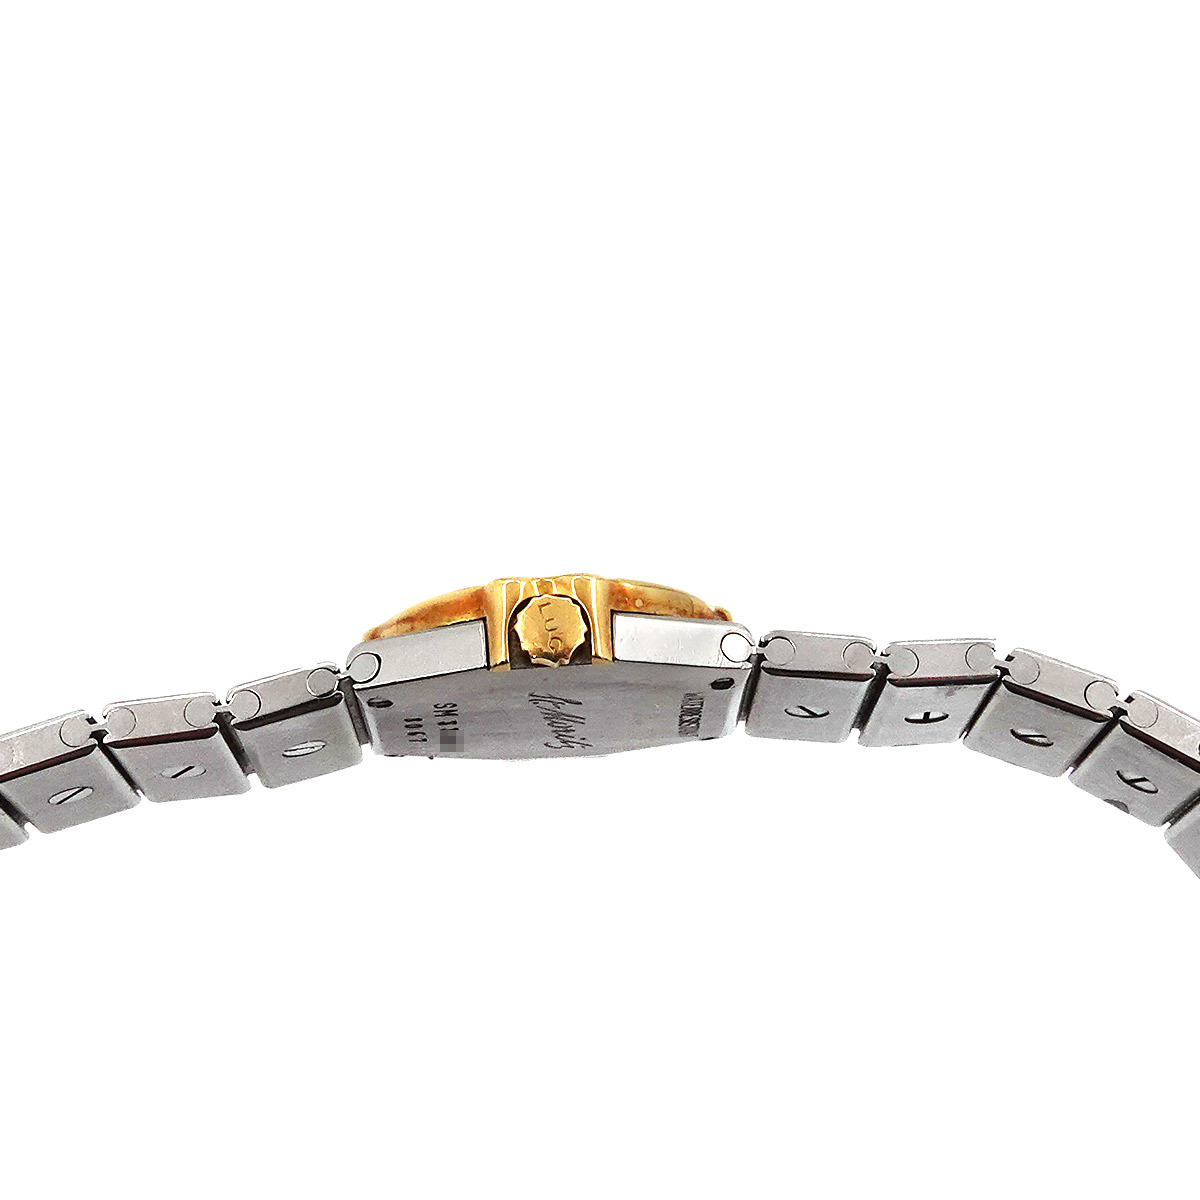  Chopard Chopard солнечный molitsu комбинированный 8067/11 бриллиантовая оправа женские наручные часы белый циферблат YG кварц St. Moritz 90222936